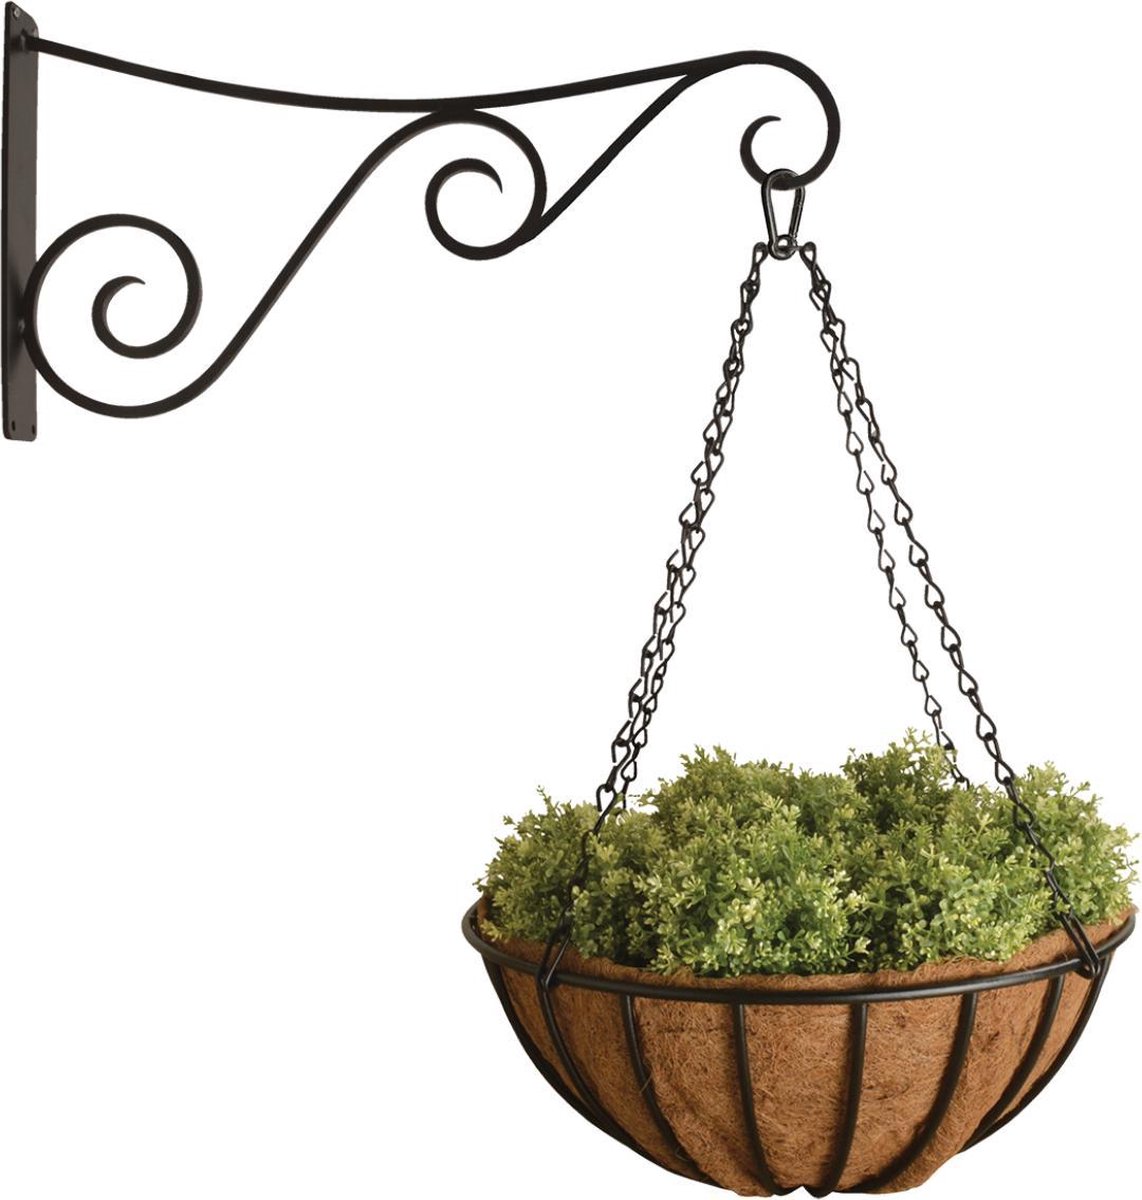 Hanging basket met haak | XL hanging basket